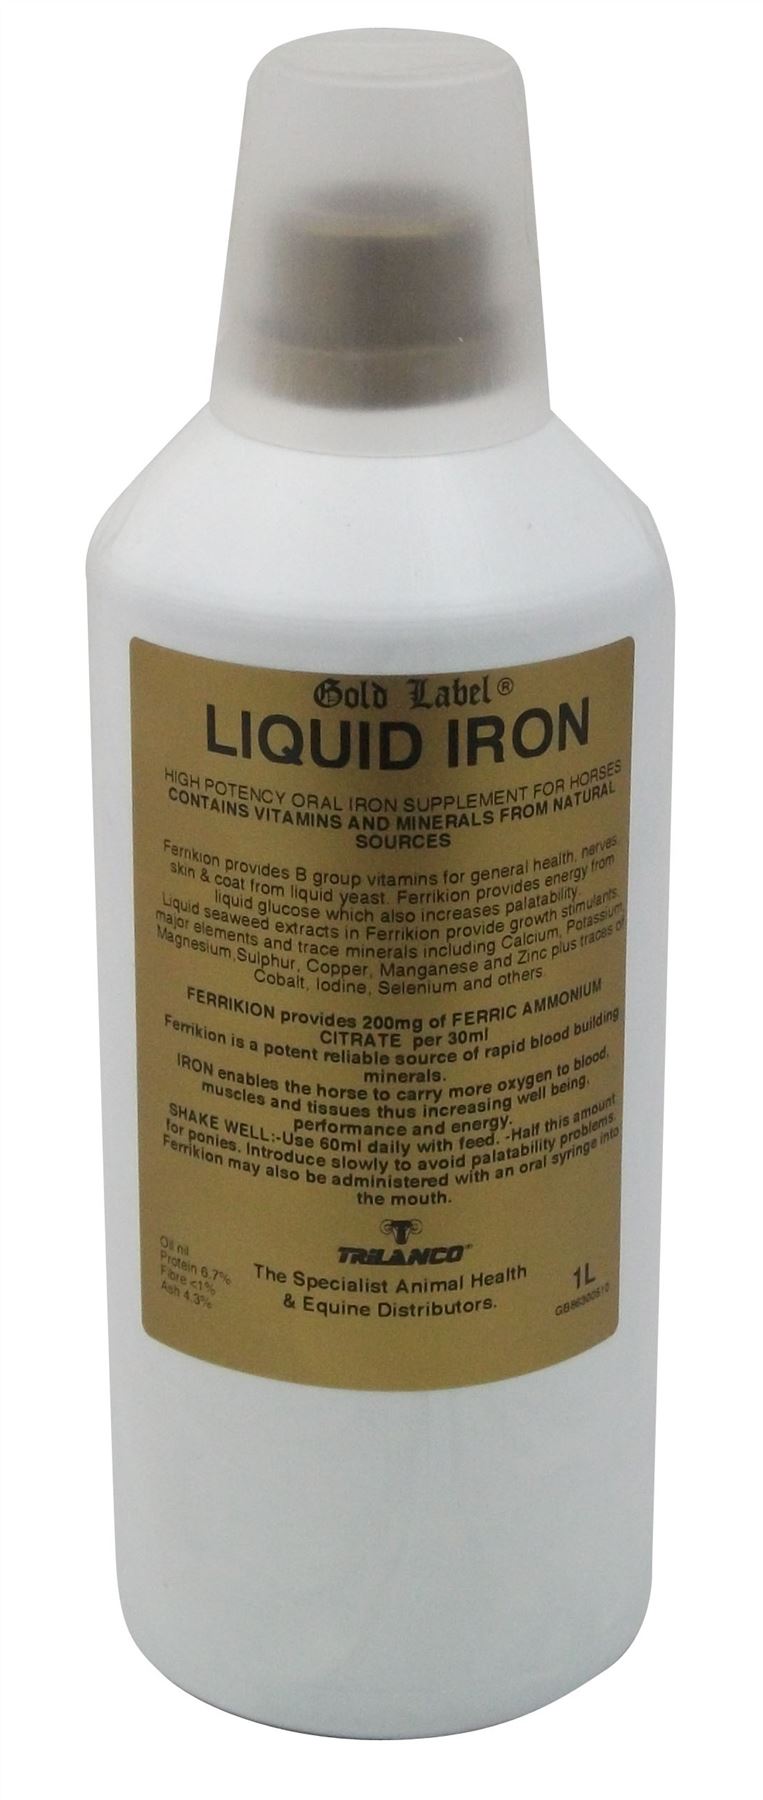 Gold Label Liquid Iron - Just Horse Riders